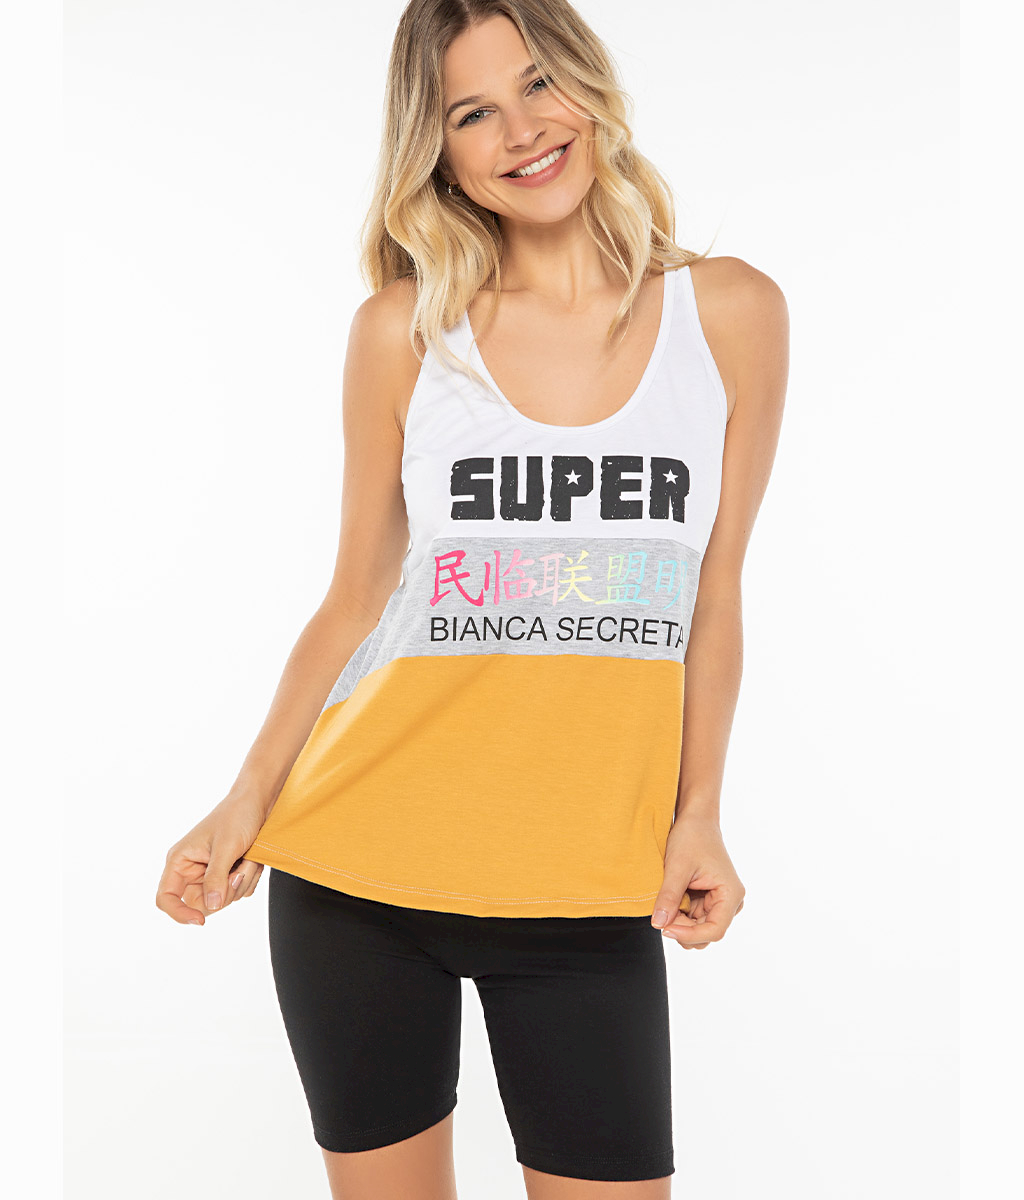 Pijama Super PV - Bianca Secreta